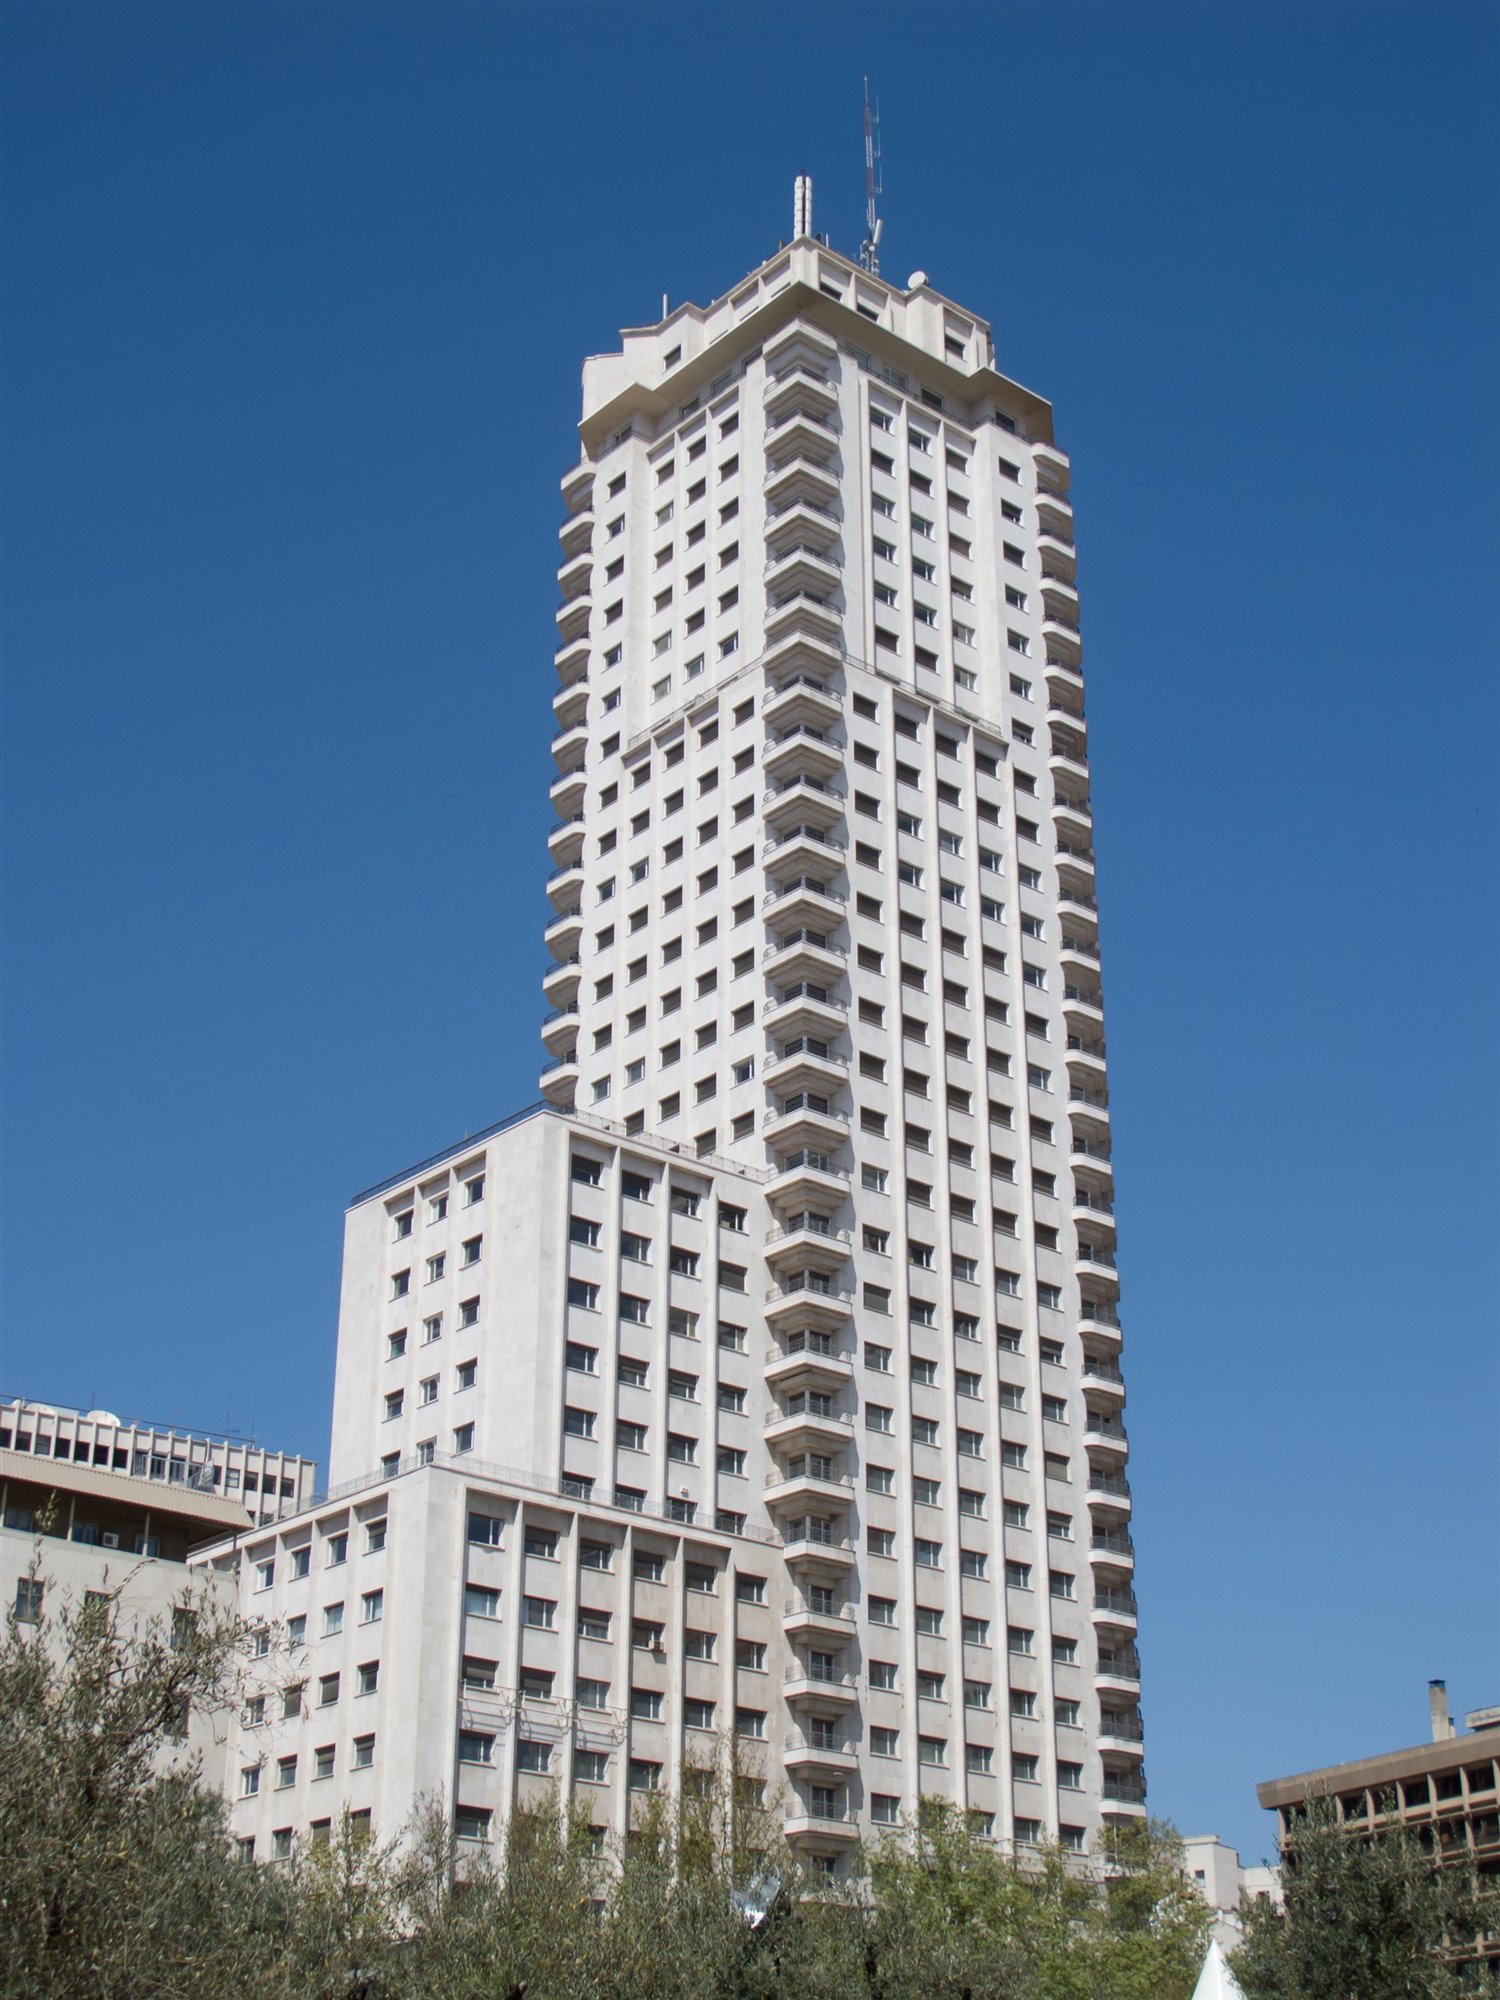 1957 Torre de Madrid Julián and José María Otamendi Machimbarrena